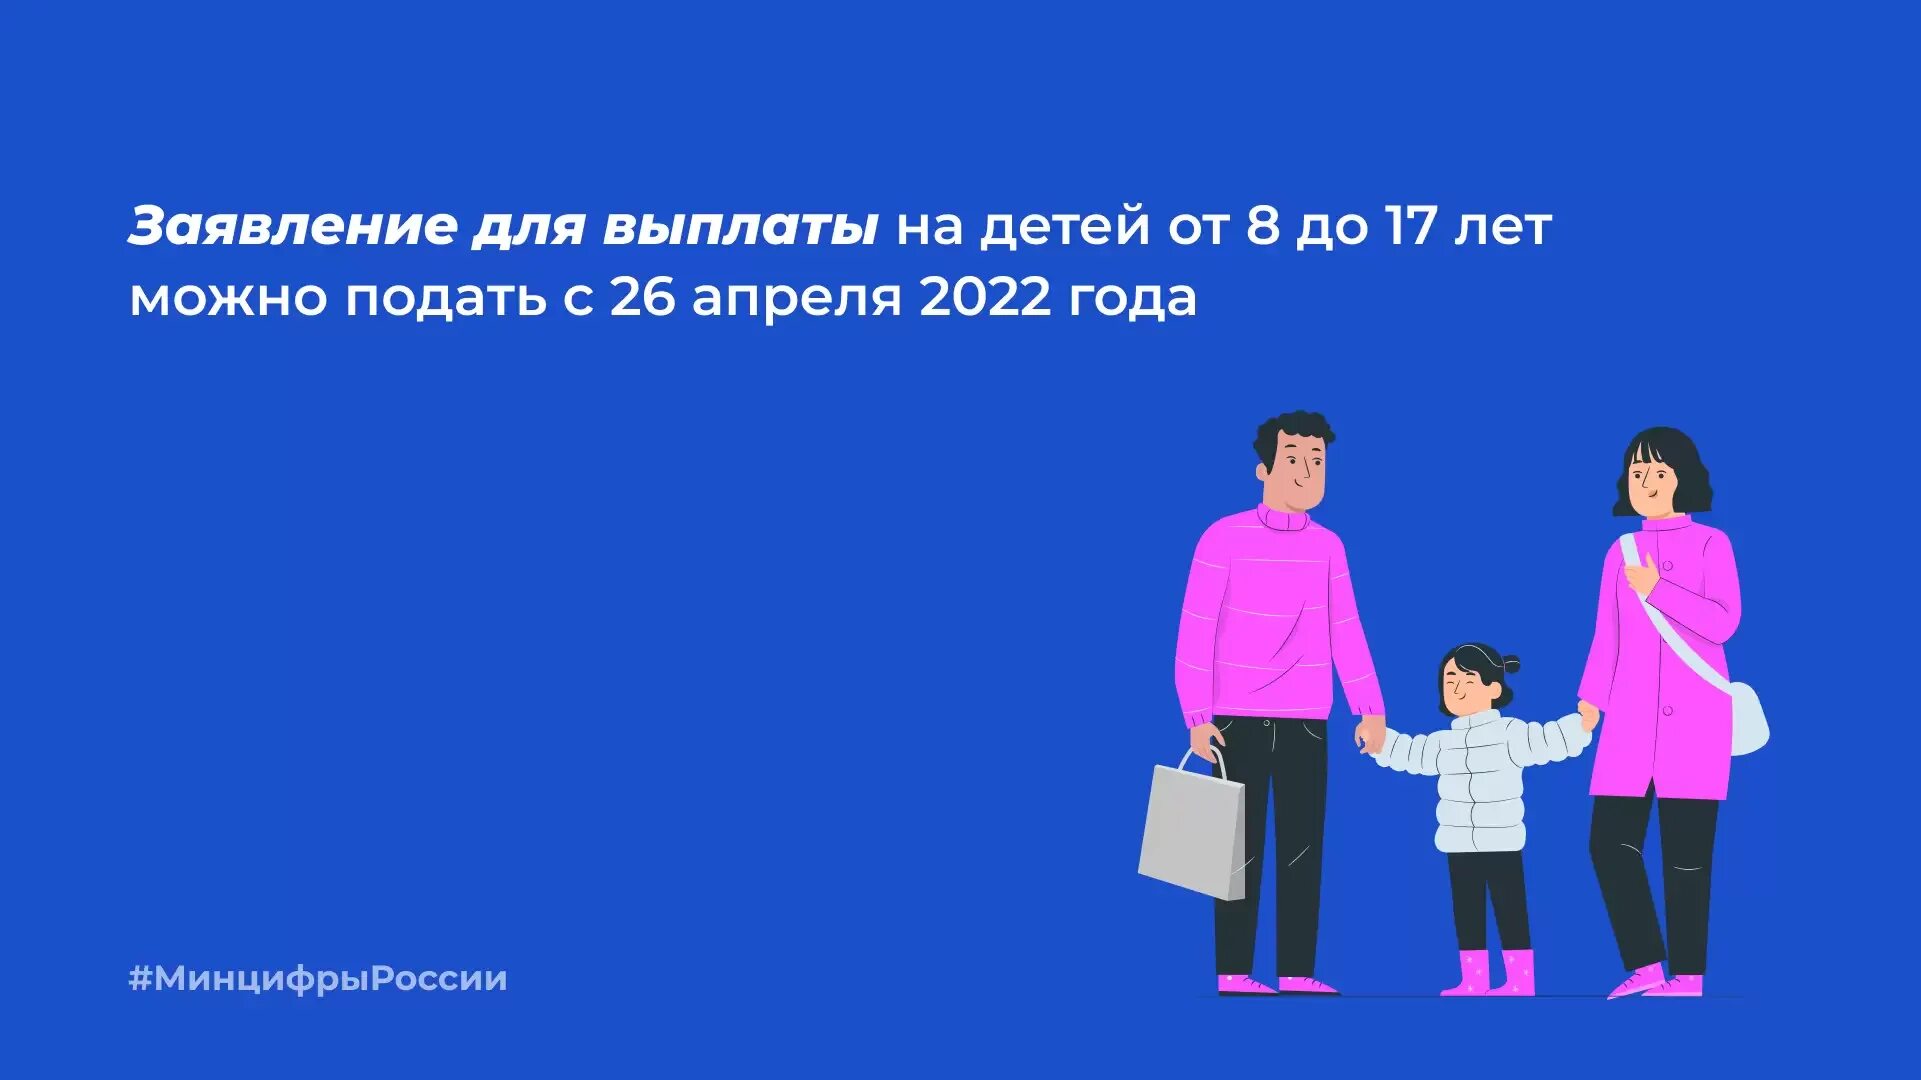 Новая выплата 5 5. Пособие на детей от 8 до 17. Госуслуга пособие на детей. От 8 до 17 лет в 2022 выплаты на детей. Пособие на детей 8-17 лет.